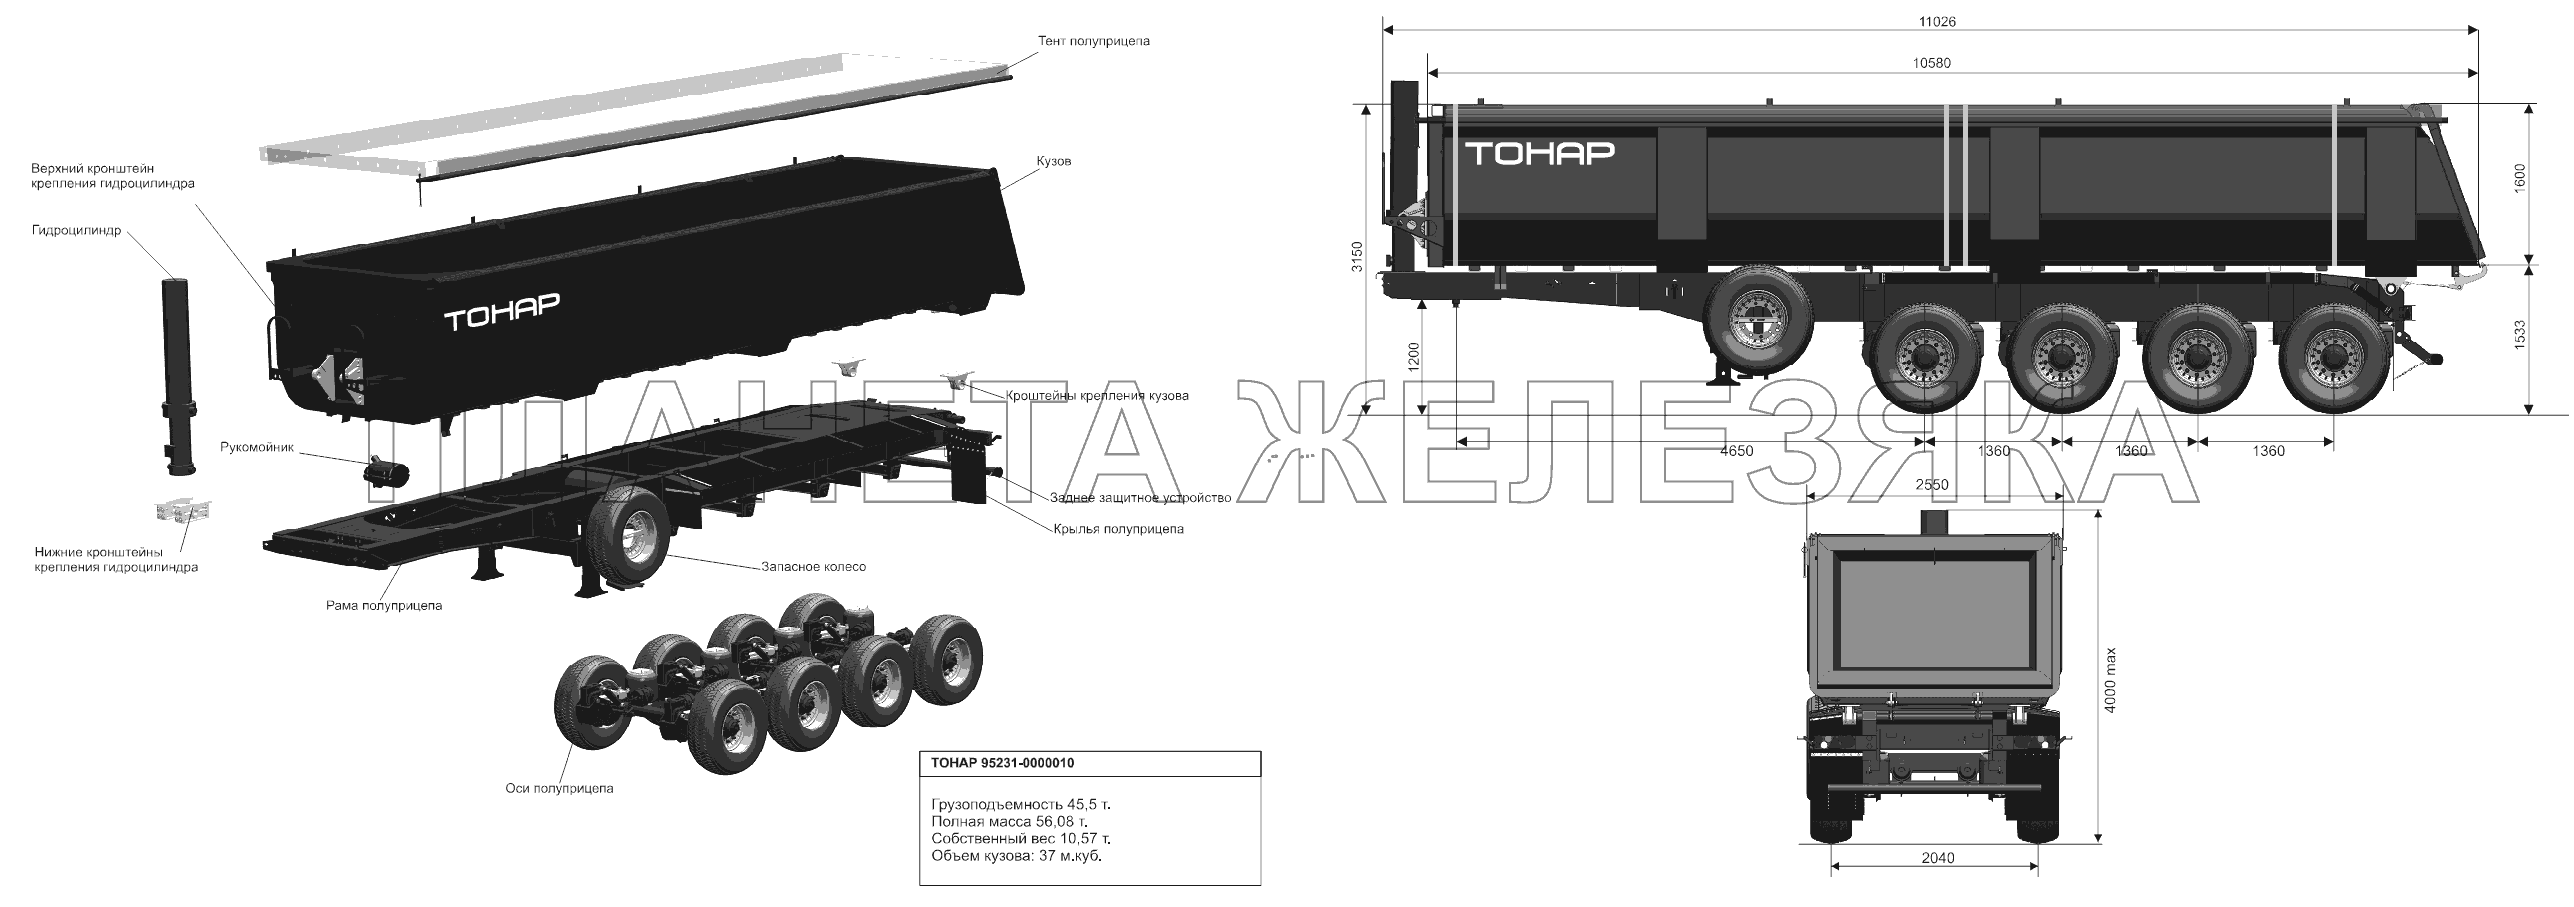 Общий вид полуприцепа модели 95234-0000010 Тонар-95234